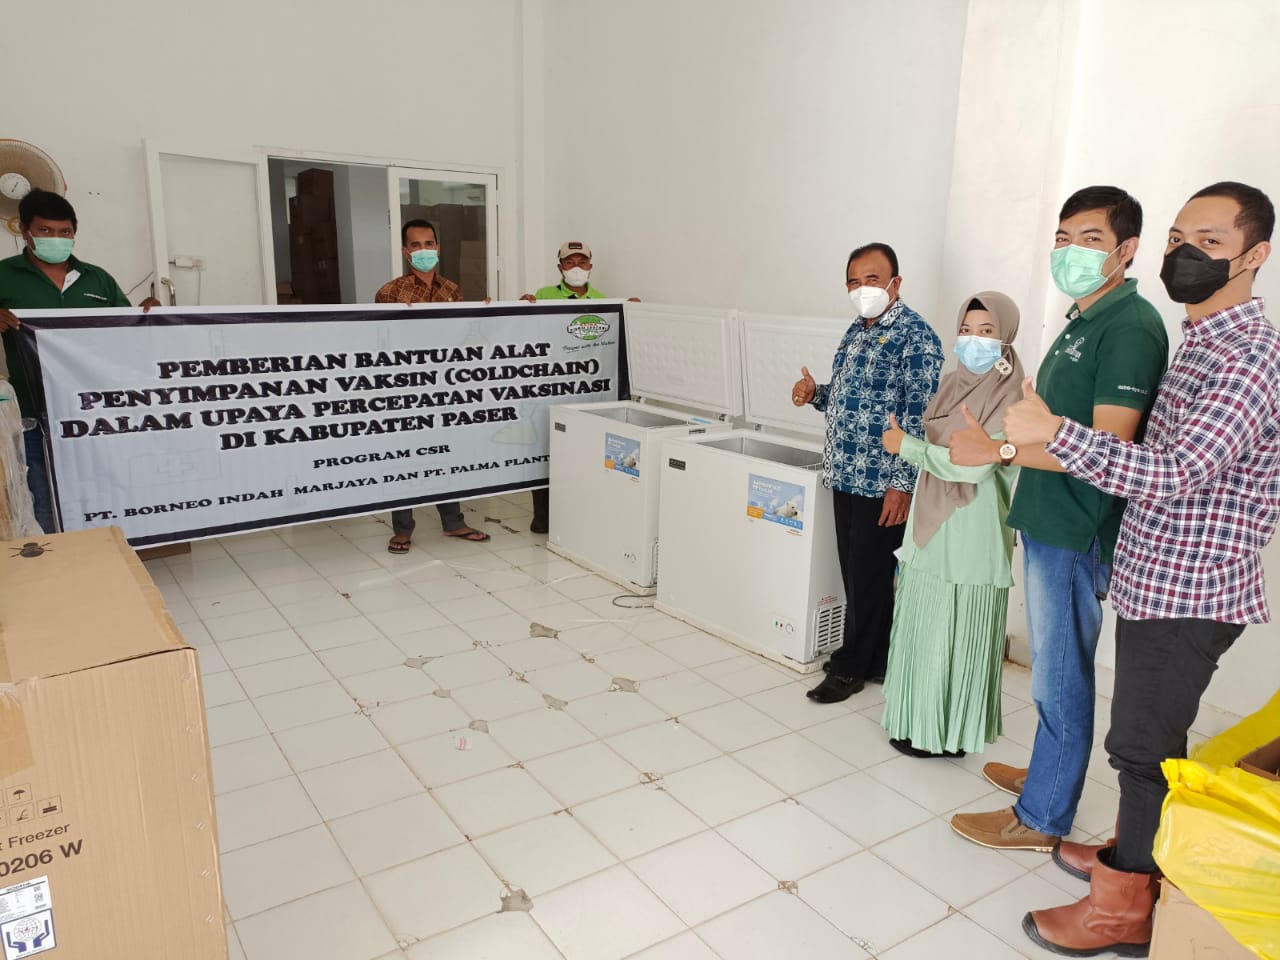 Pemberian bantuan alat penyimpanan vaksin dalam upaya percepatan vaksinisasi di Kabupaten Paser Oleh CSR PT. Borneo Indah Marjaya dan PT. palma Plantasindo